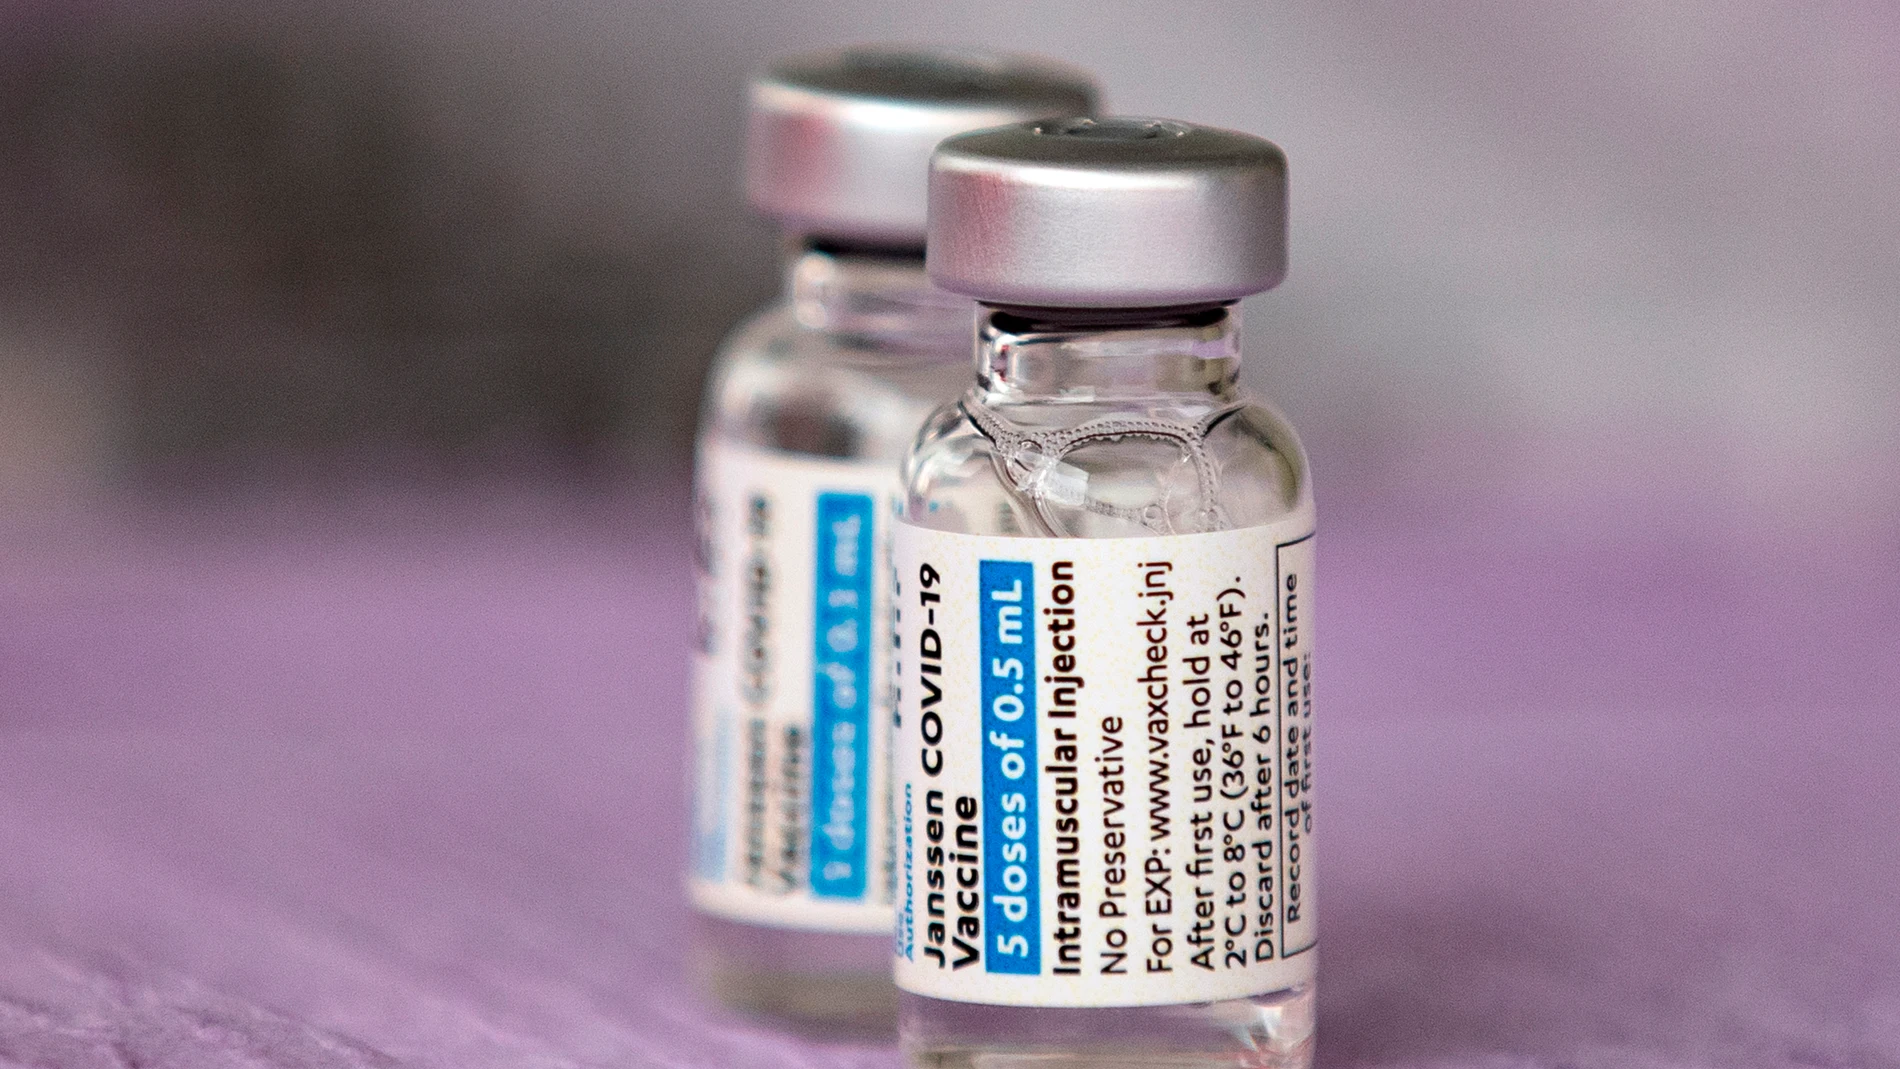 Dos dosis de la vacuna contra el coronavirus de Janssen